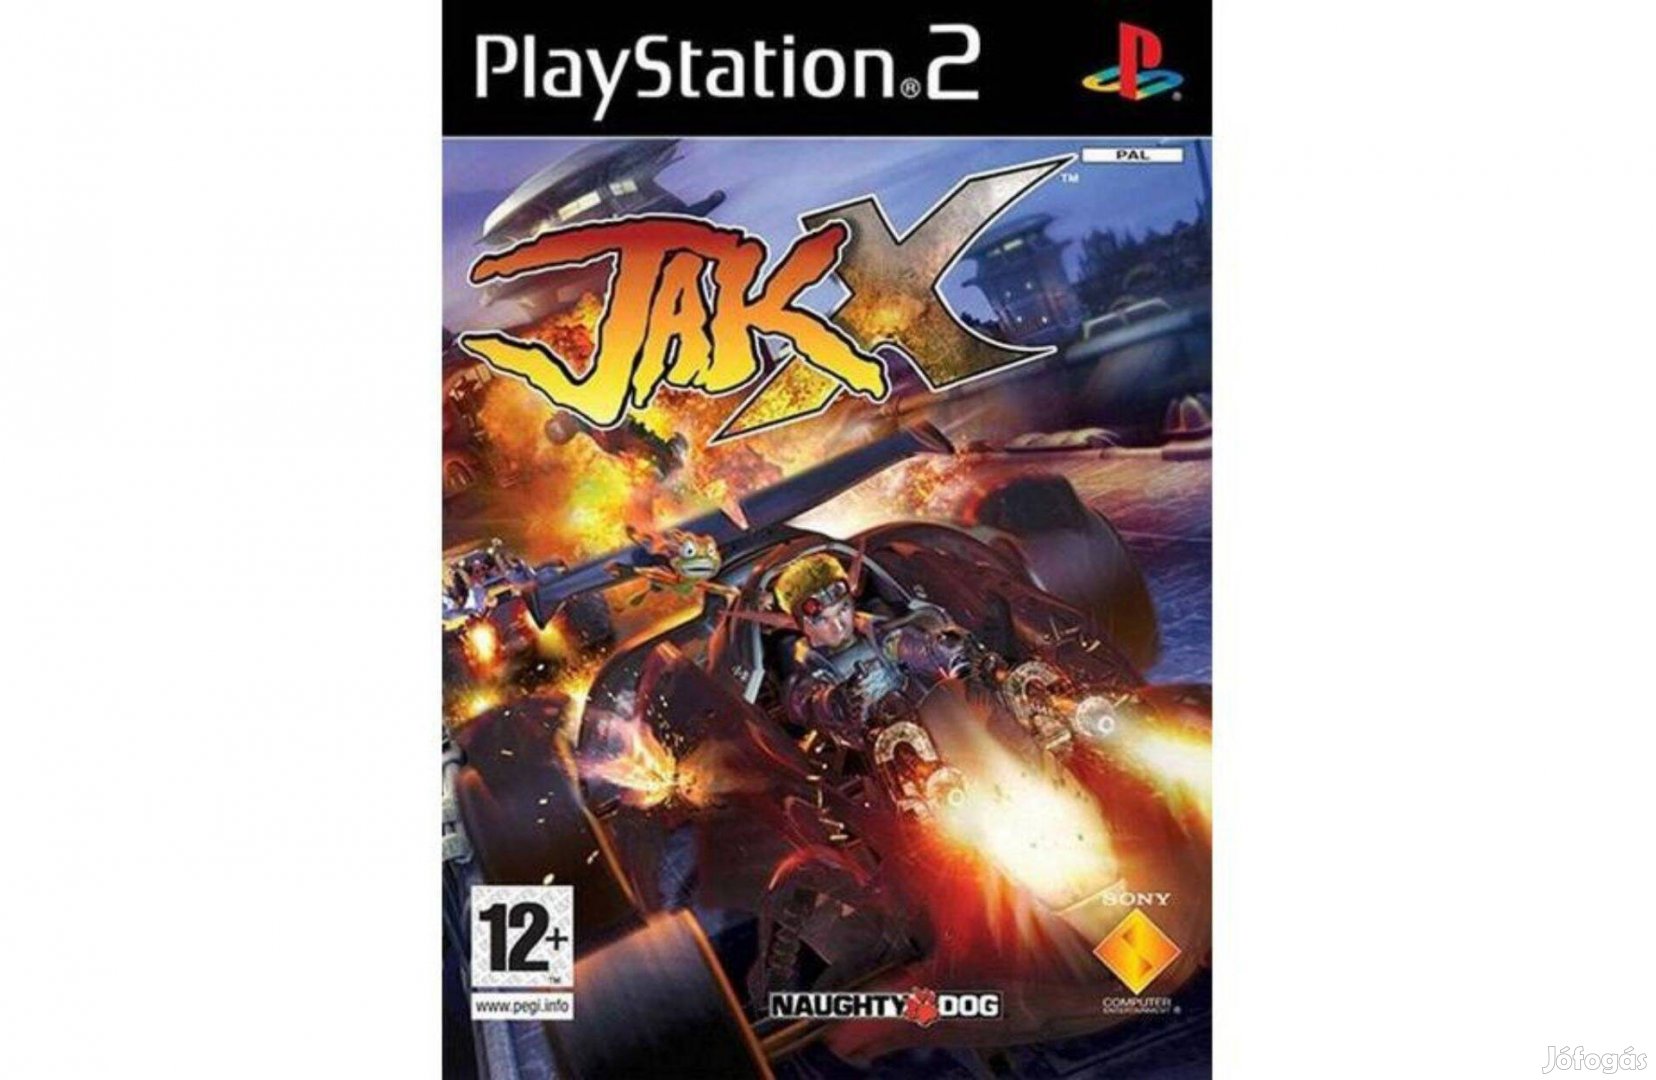 Jak X Combat Racing - PS2 játék, használt